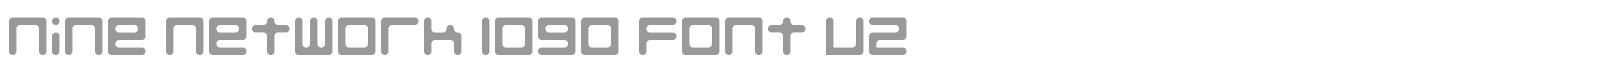 Font Nine Network logo font v2